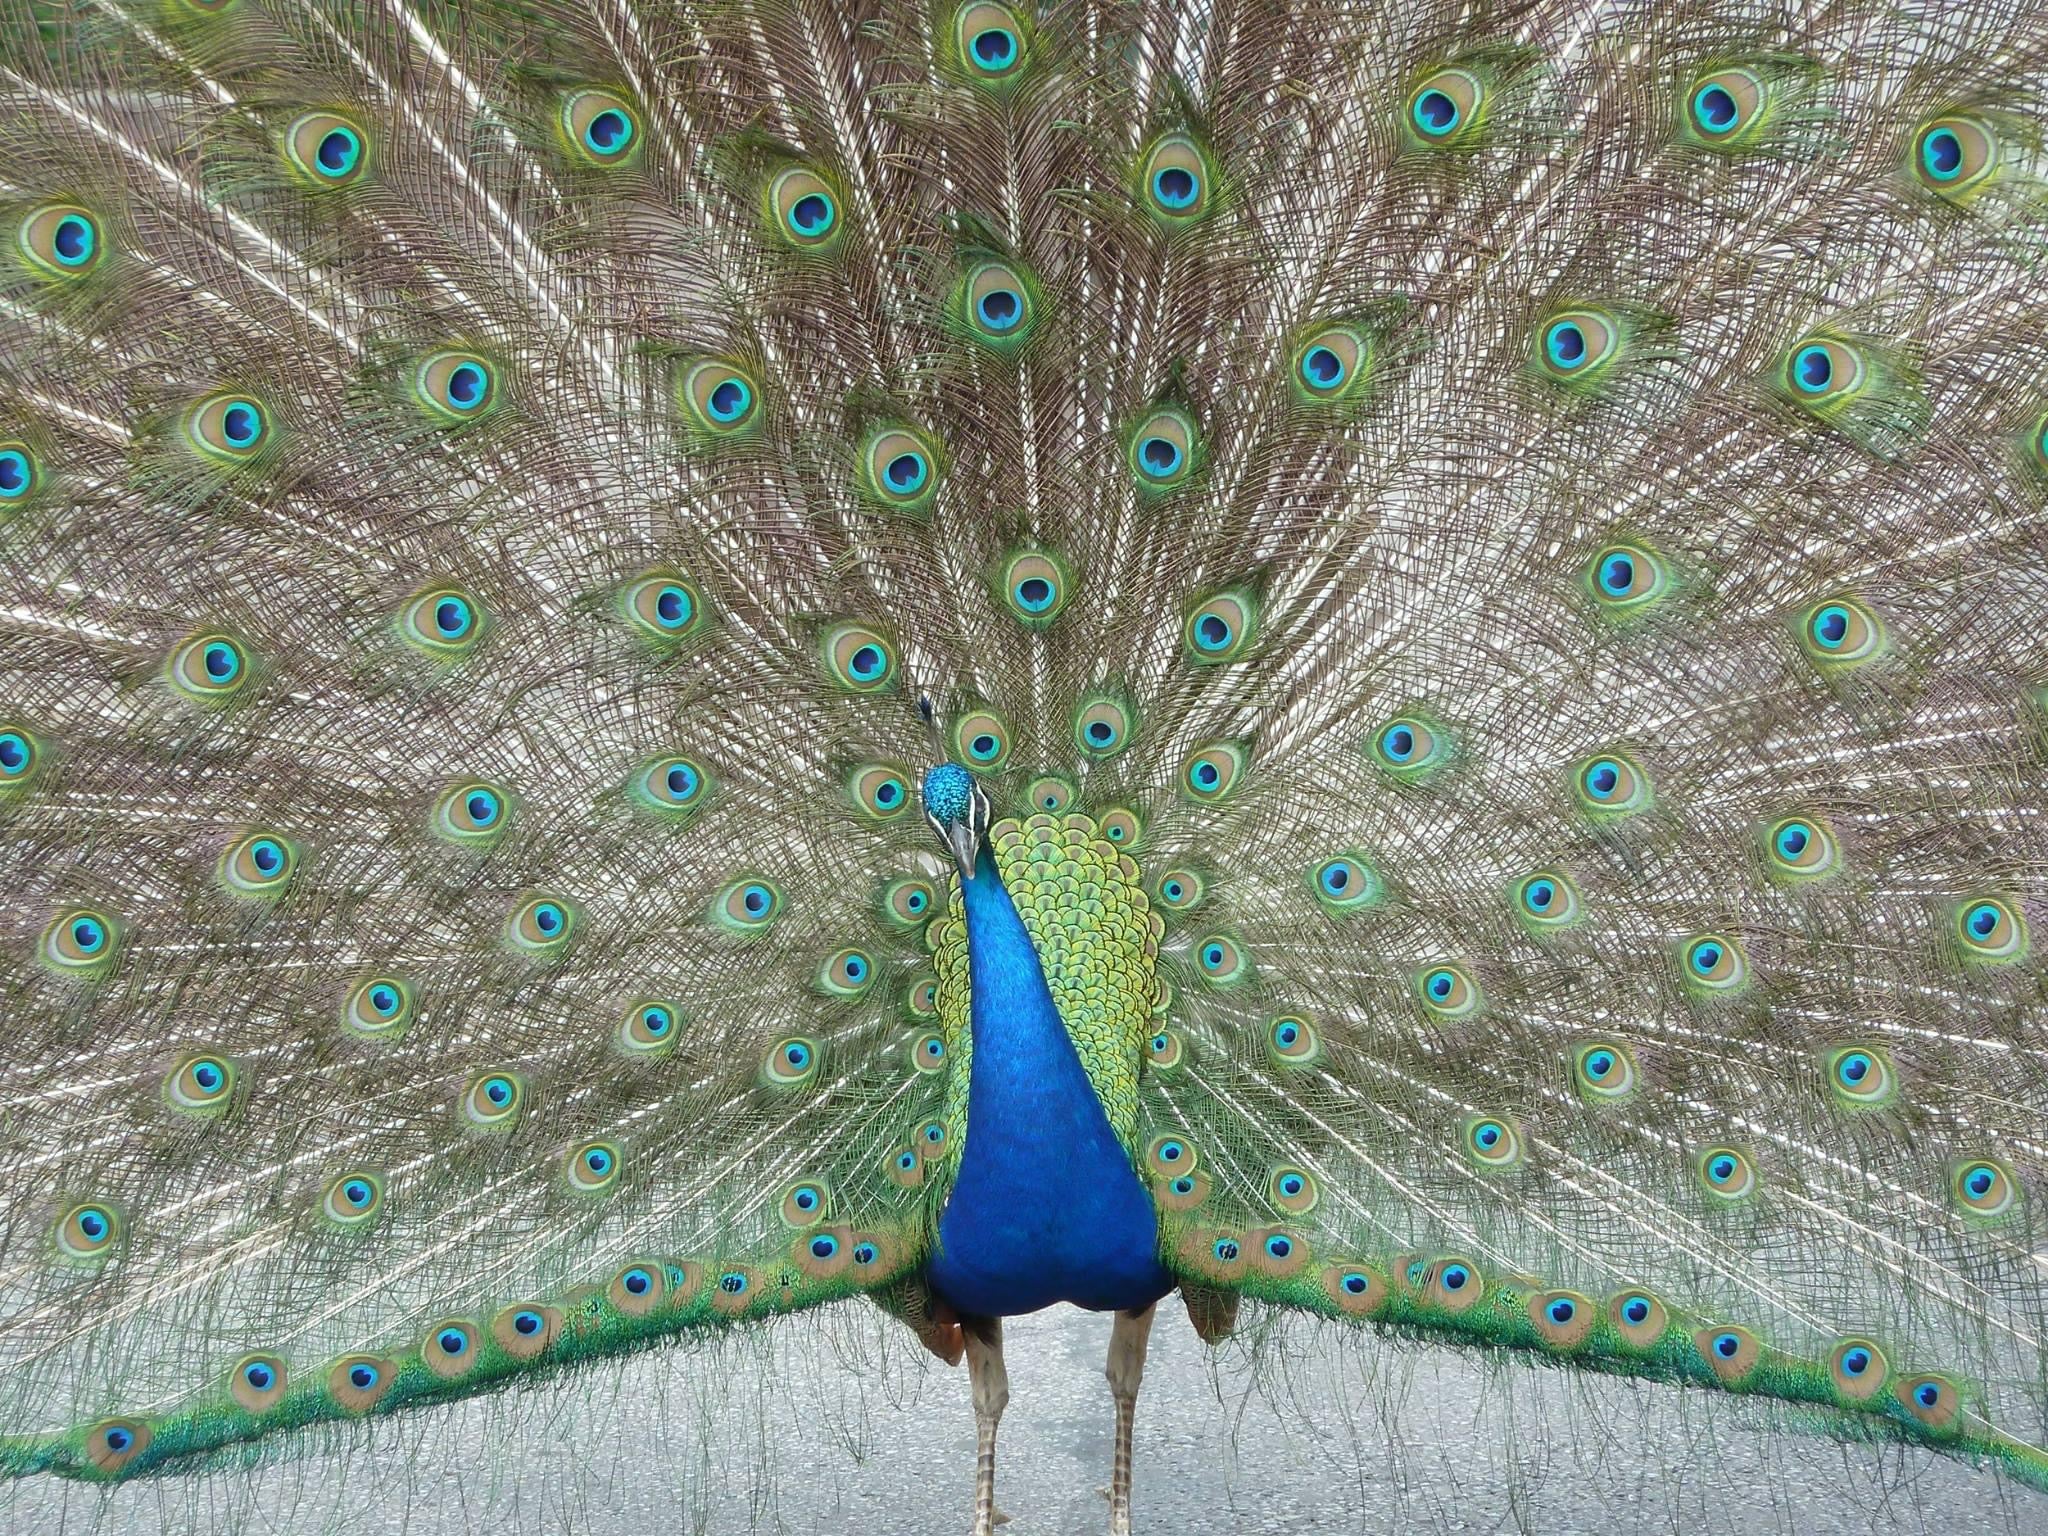 peacock at Cincinnati zoo